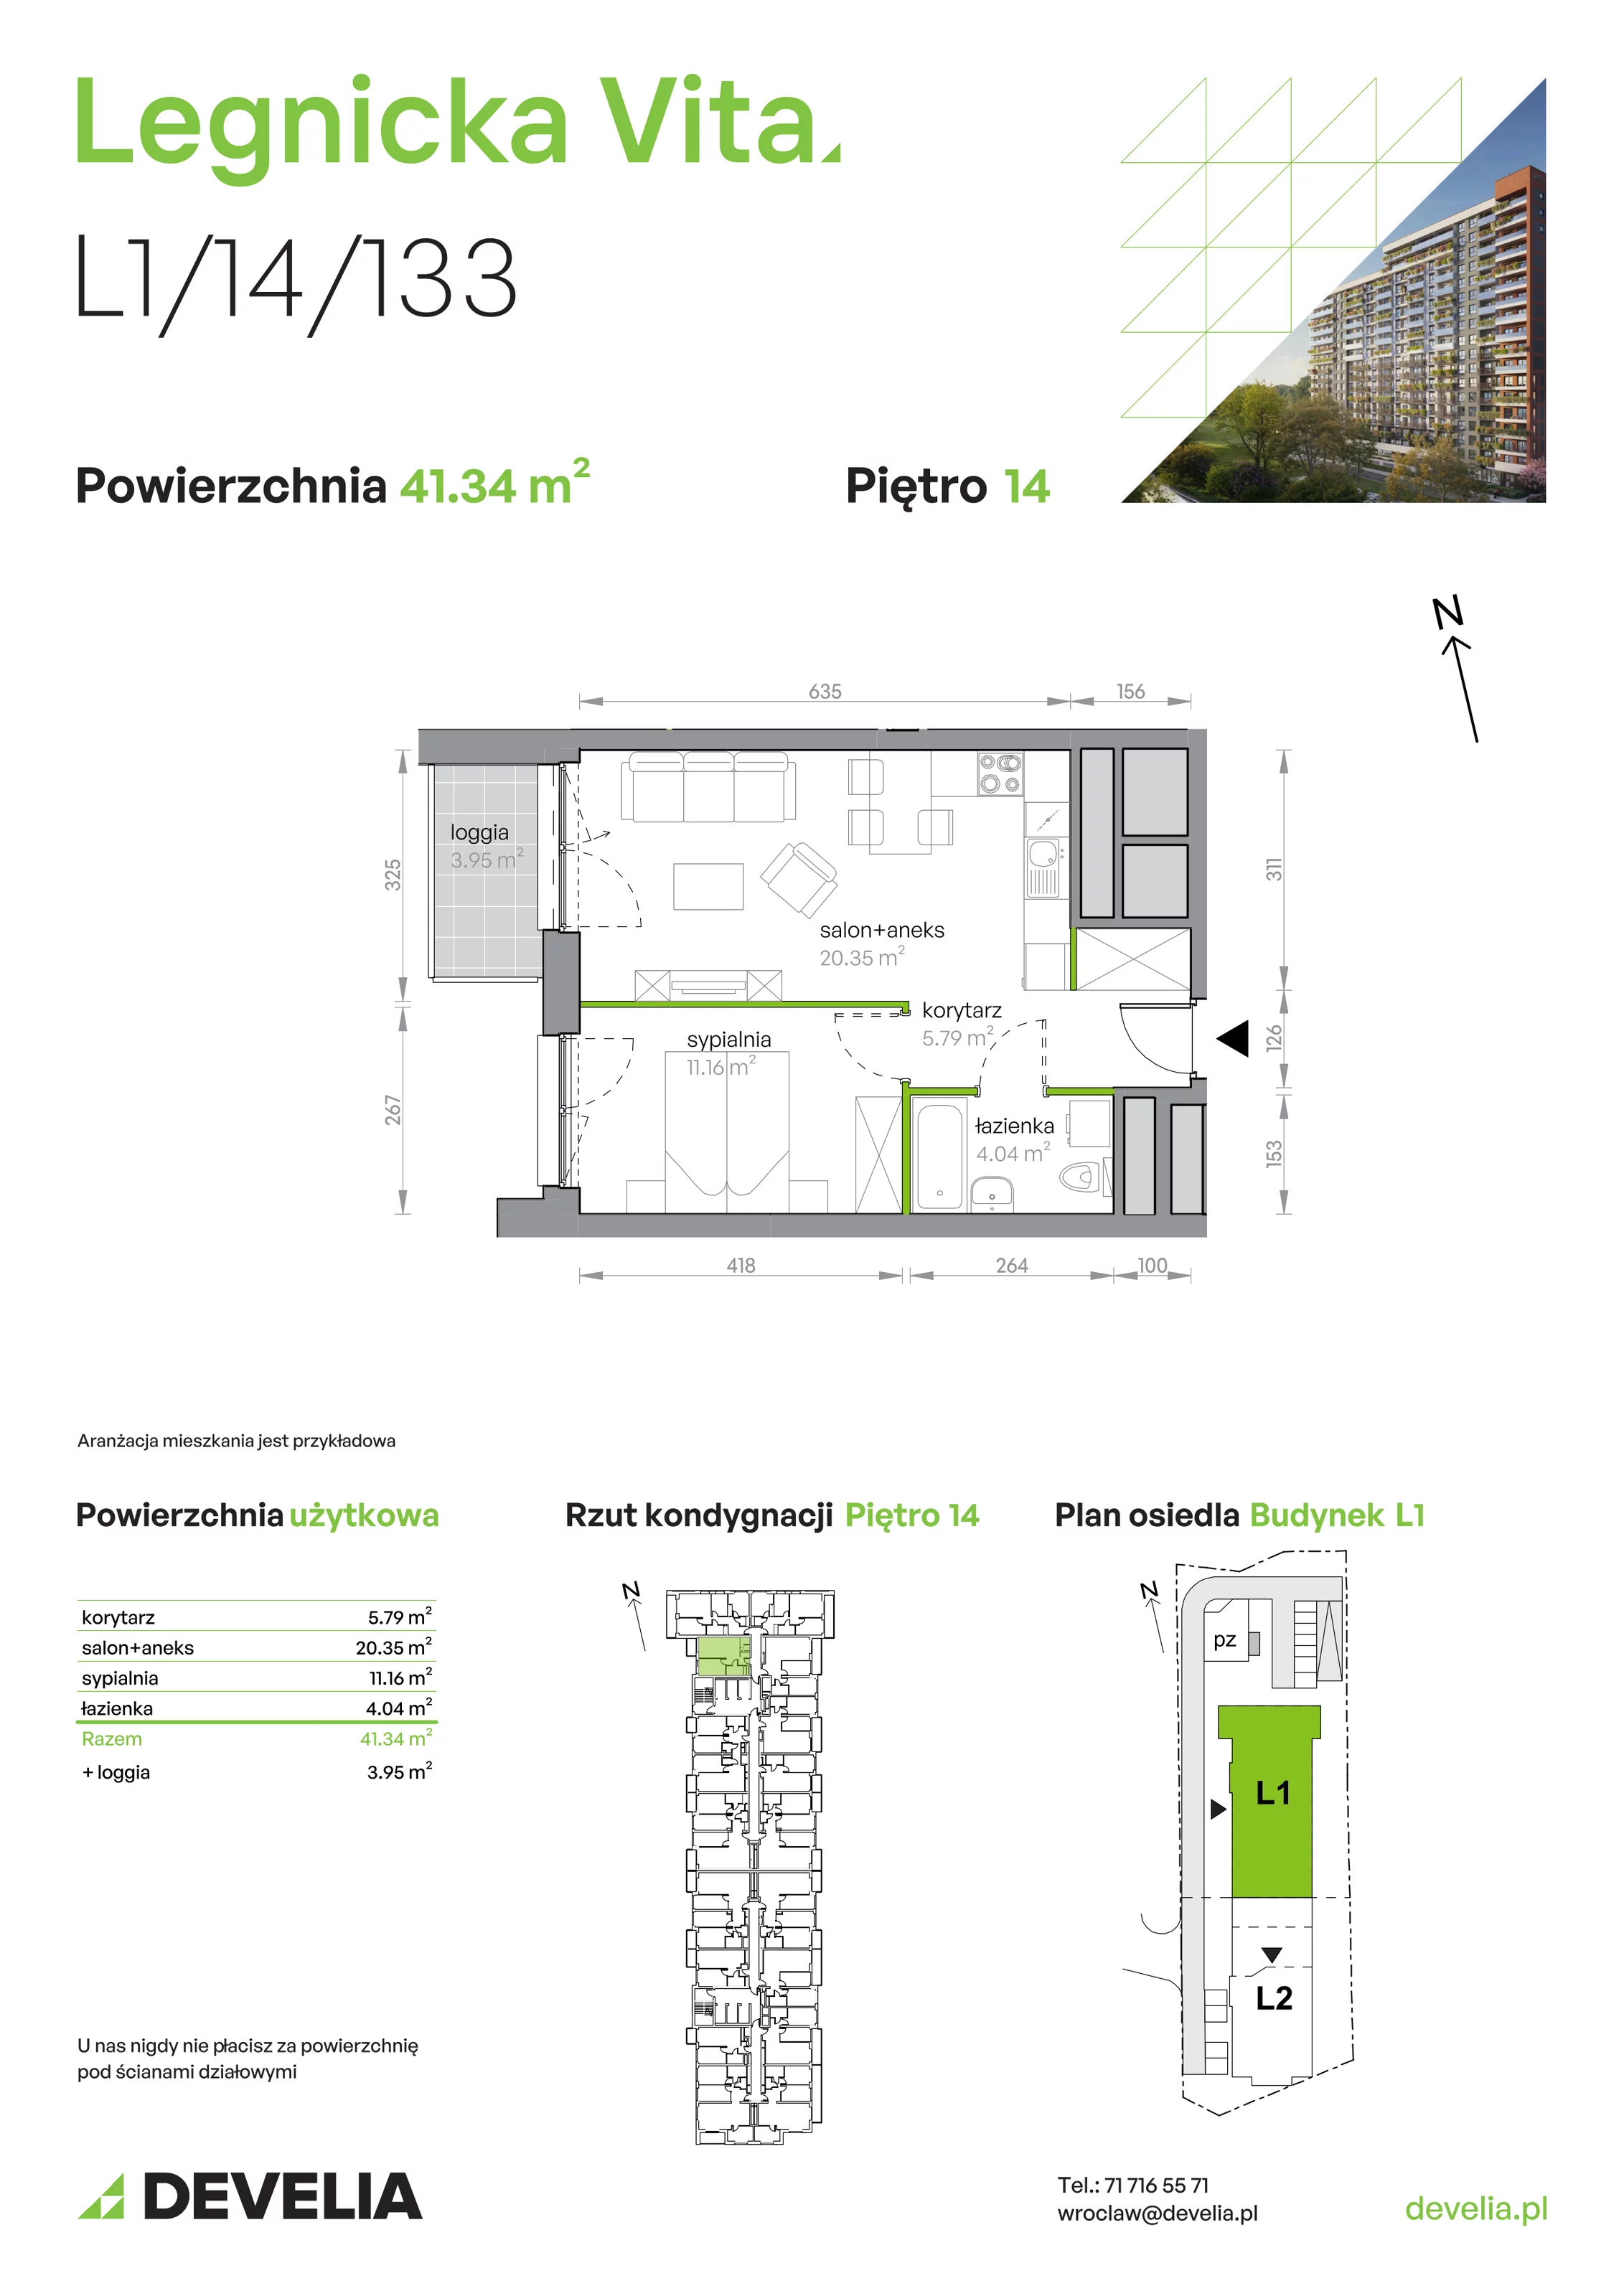 Mieszkanie 41,34 m², piętro 14, oferta nr L1/14/133, Legnicka Vita, Wrocław, Gądów-Popowice Południowe, Popowice, ul. Legnicka 52 A